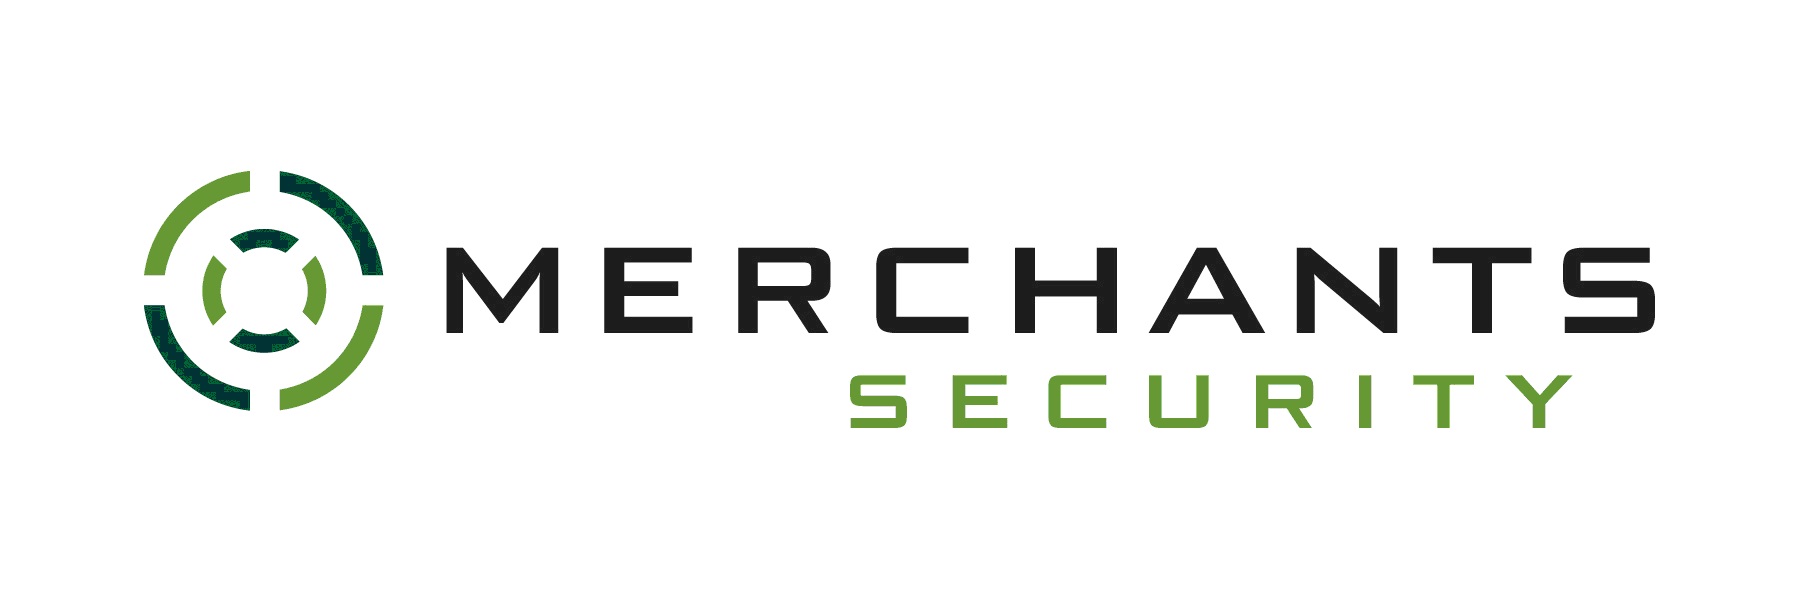 Merchants Security